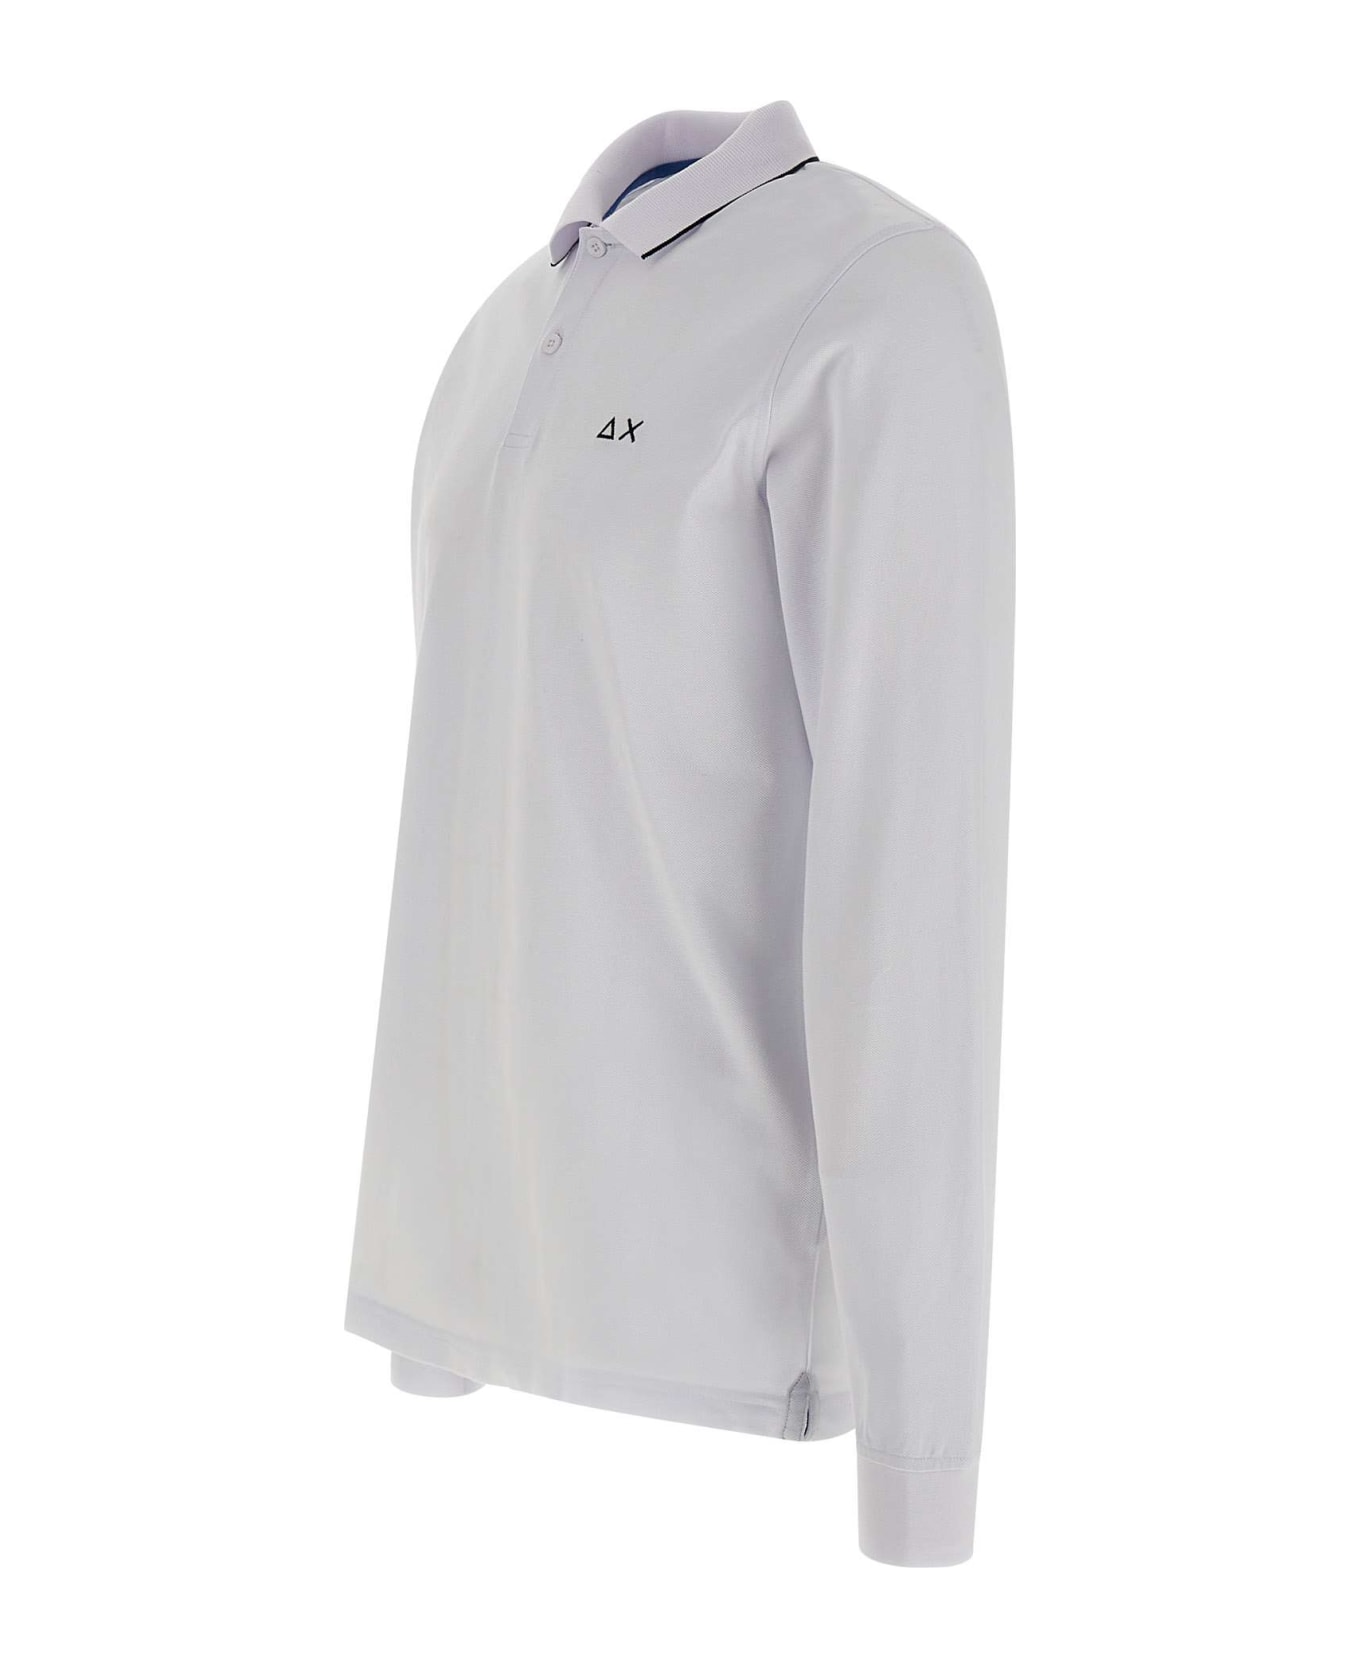 Sun 68 "small Stripes" Cotton Polo Shirt - WHITE